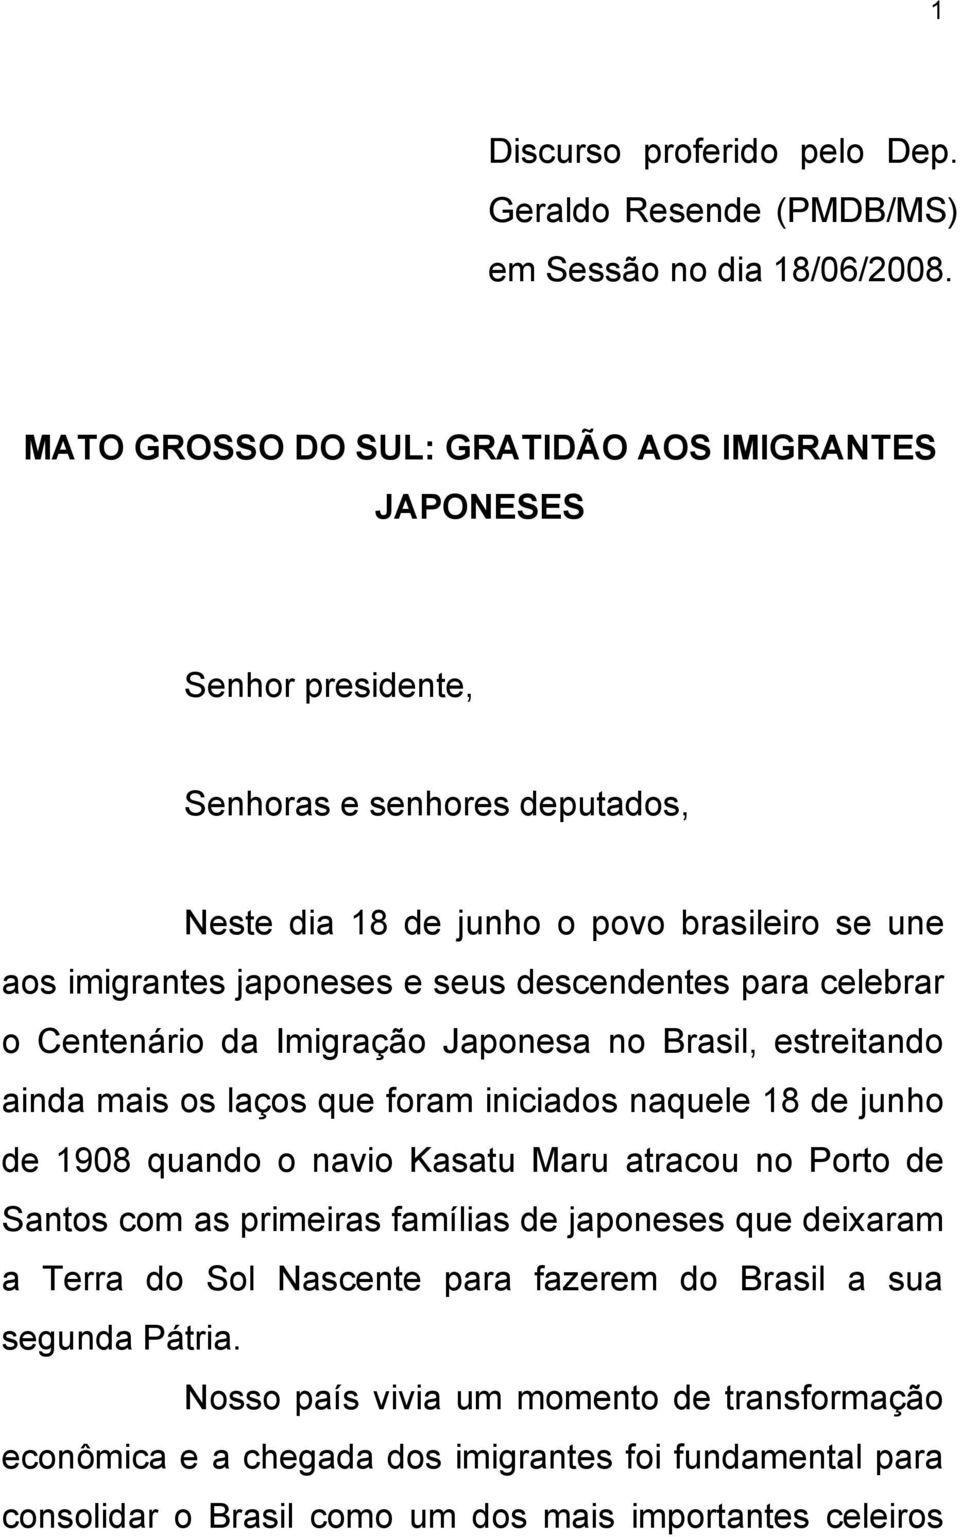 descendentes para celebrar o Centenário da Imigração Japonesa no Brasil, estreitando ainda mais os laços que foram iniciados naquele 18 de junho de 1908 quando o navio Kasatu Maru atracou